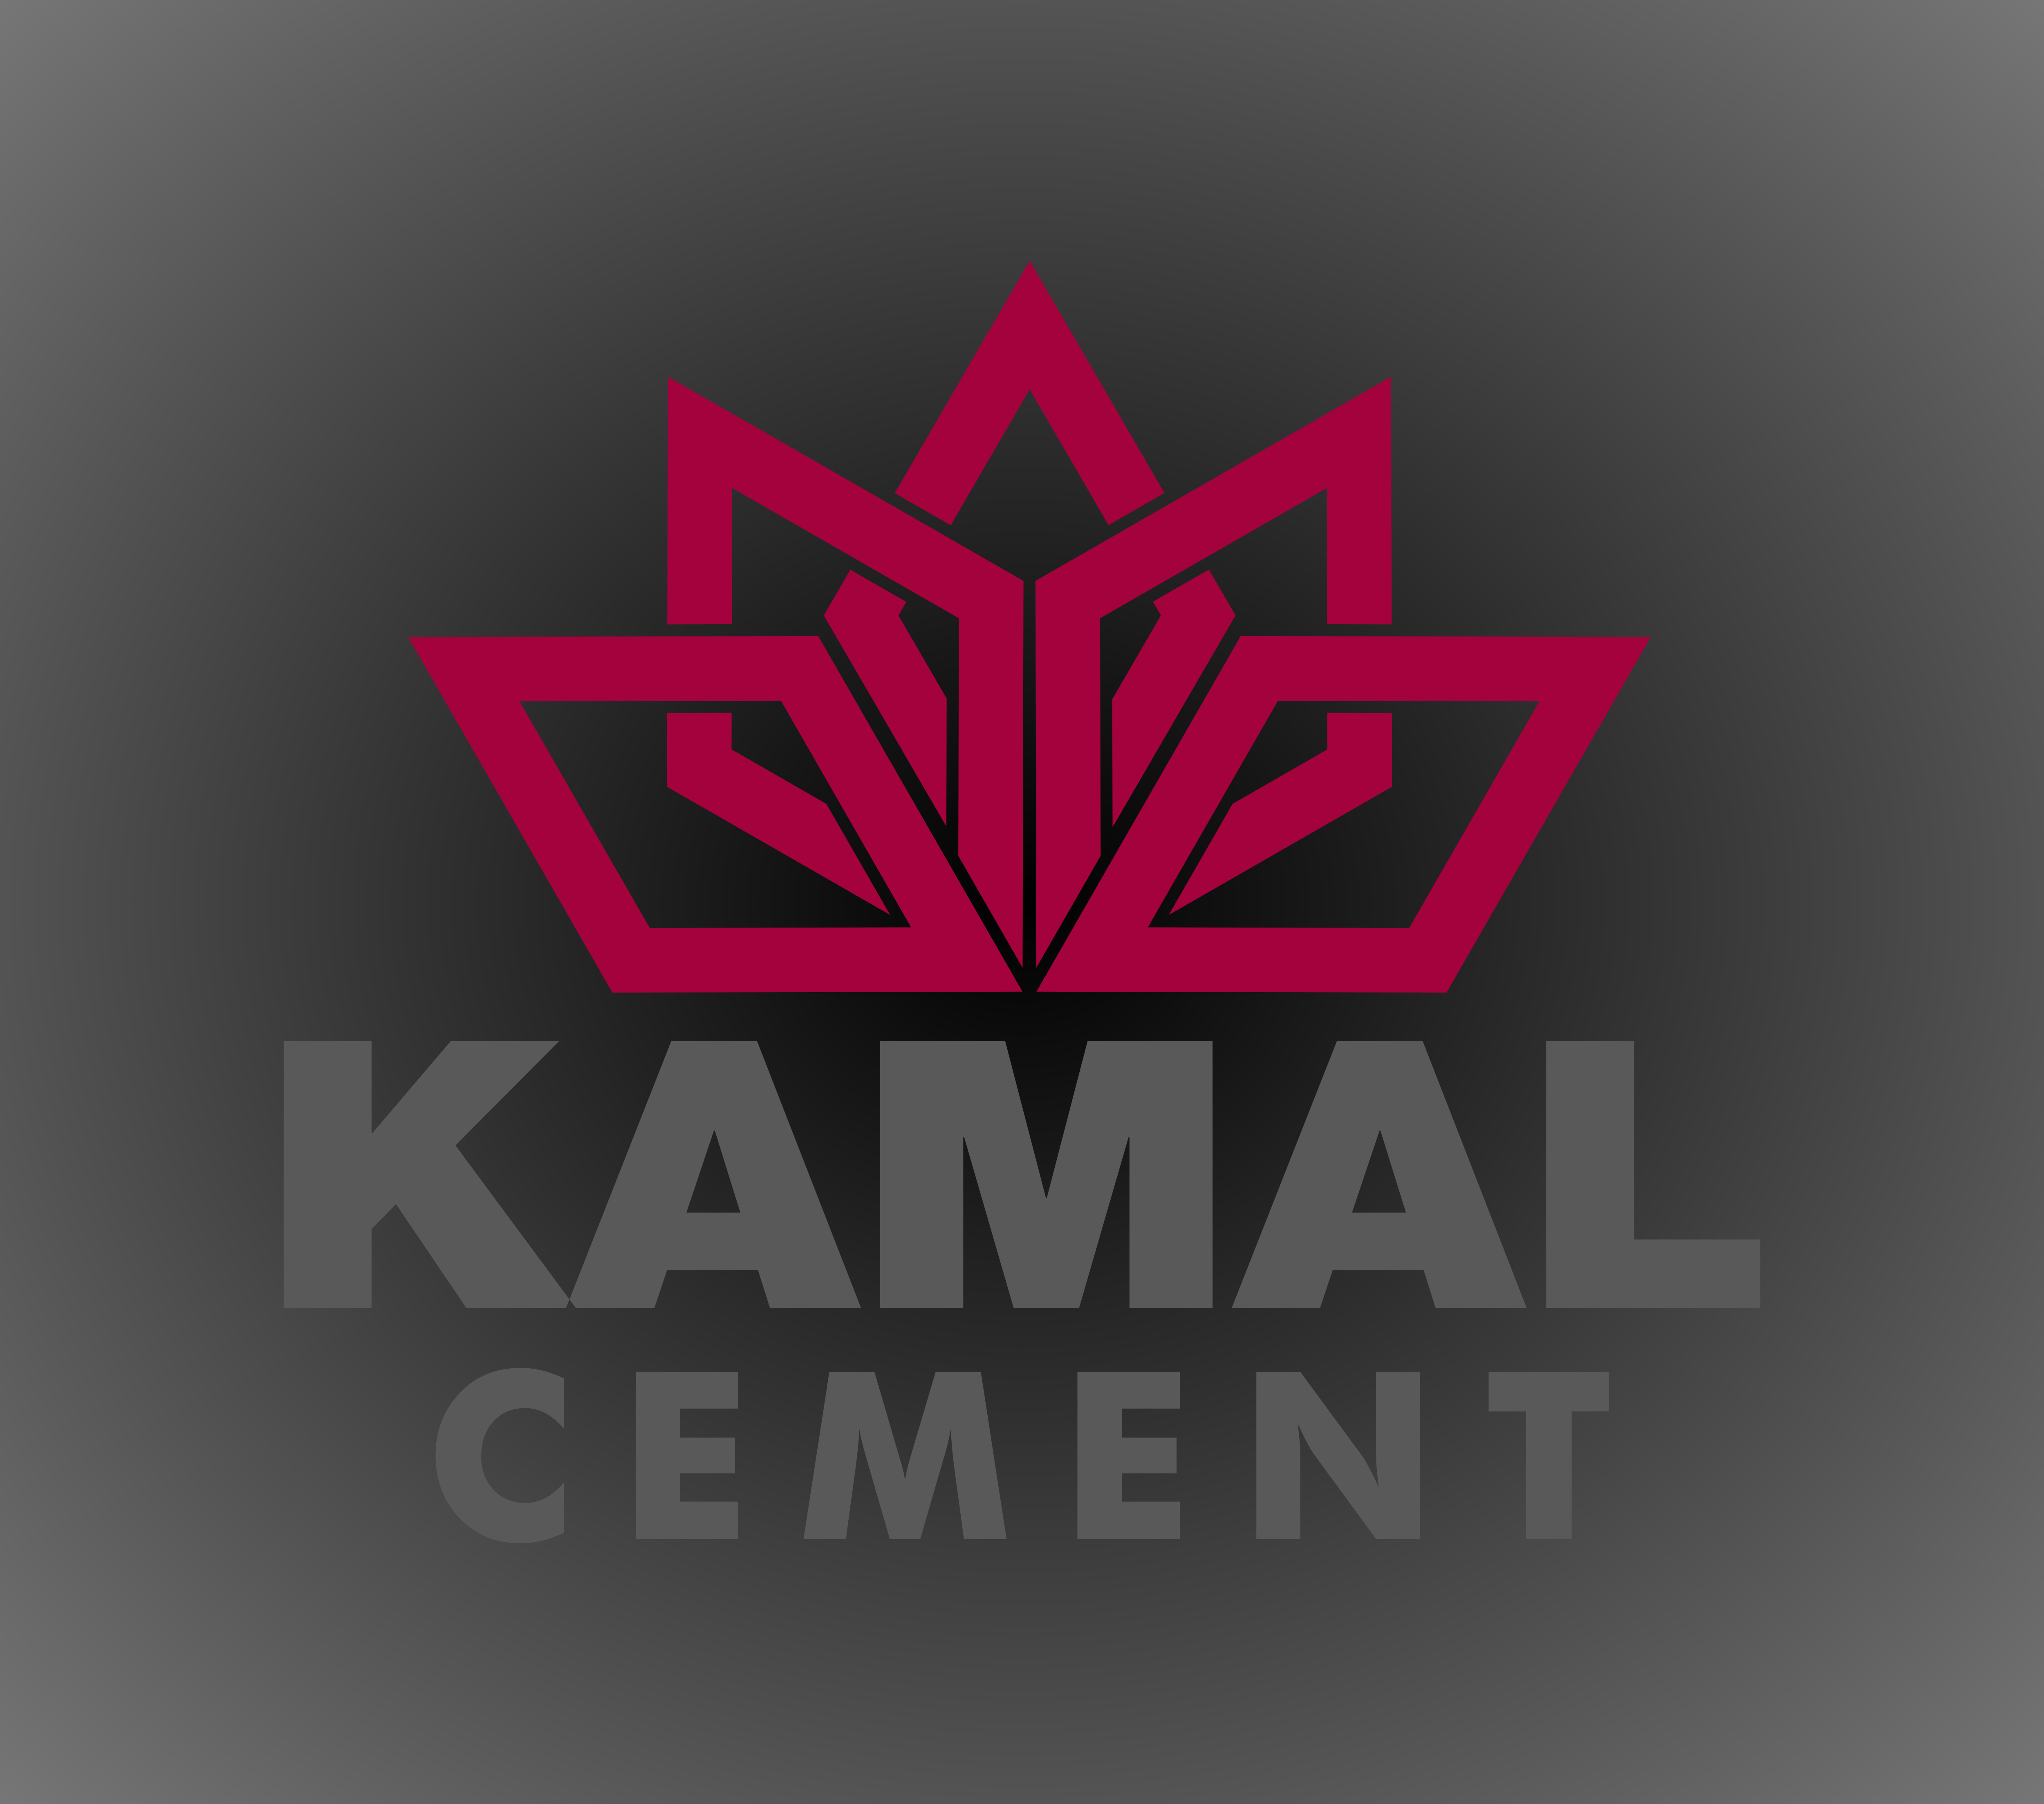 Kamal Cement – Logos Download